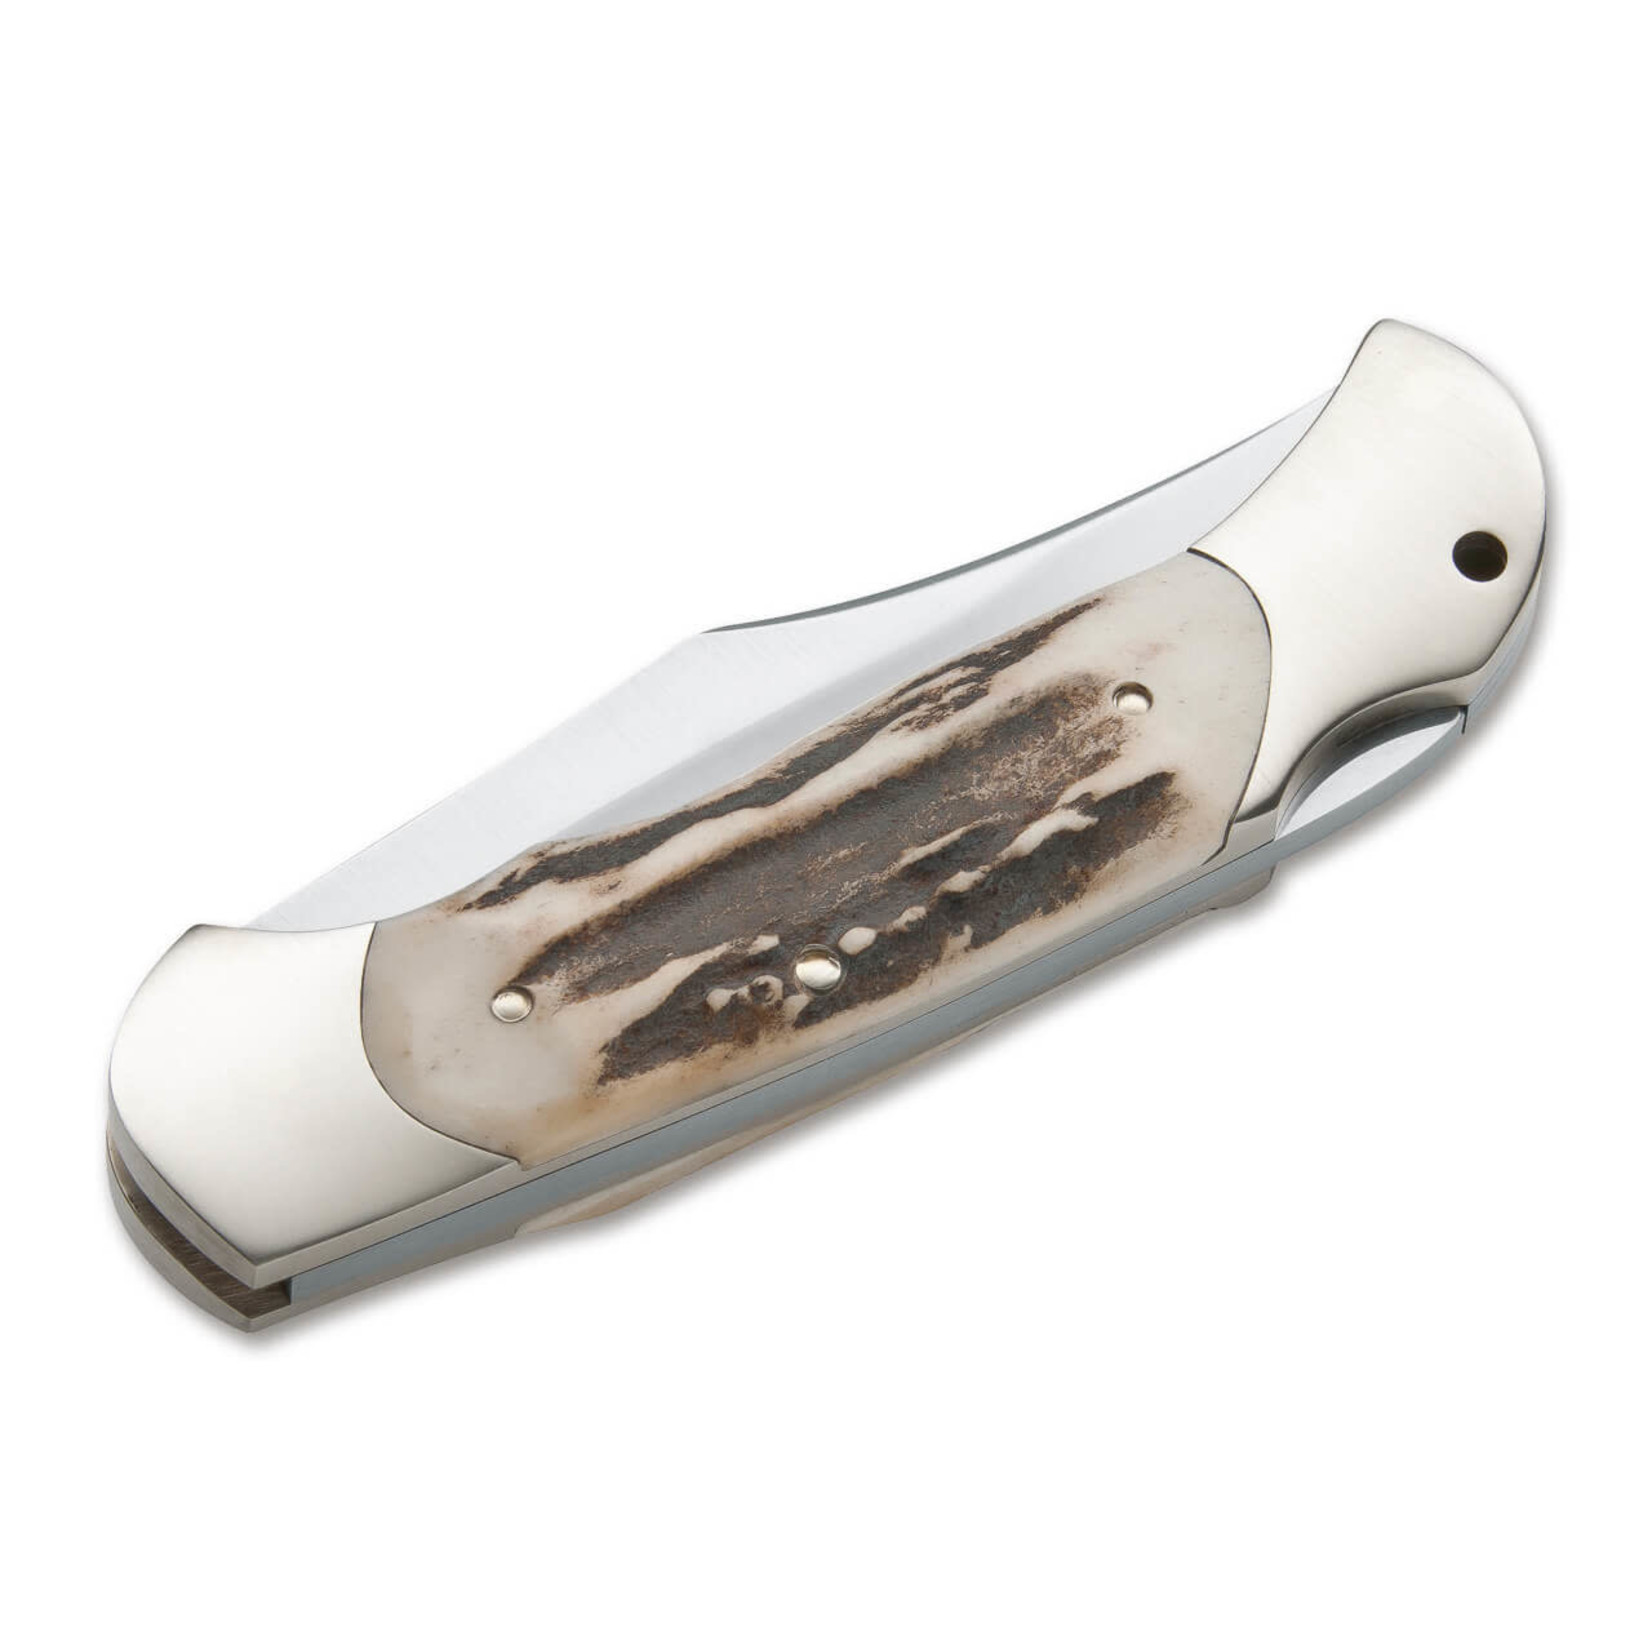 boker Boker Stag Lock Blade Folding Knife 8 1/8" OAL 113004ST  440C Stainless Steel